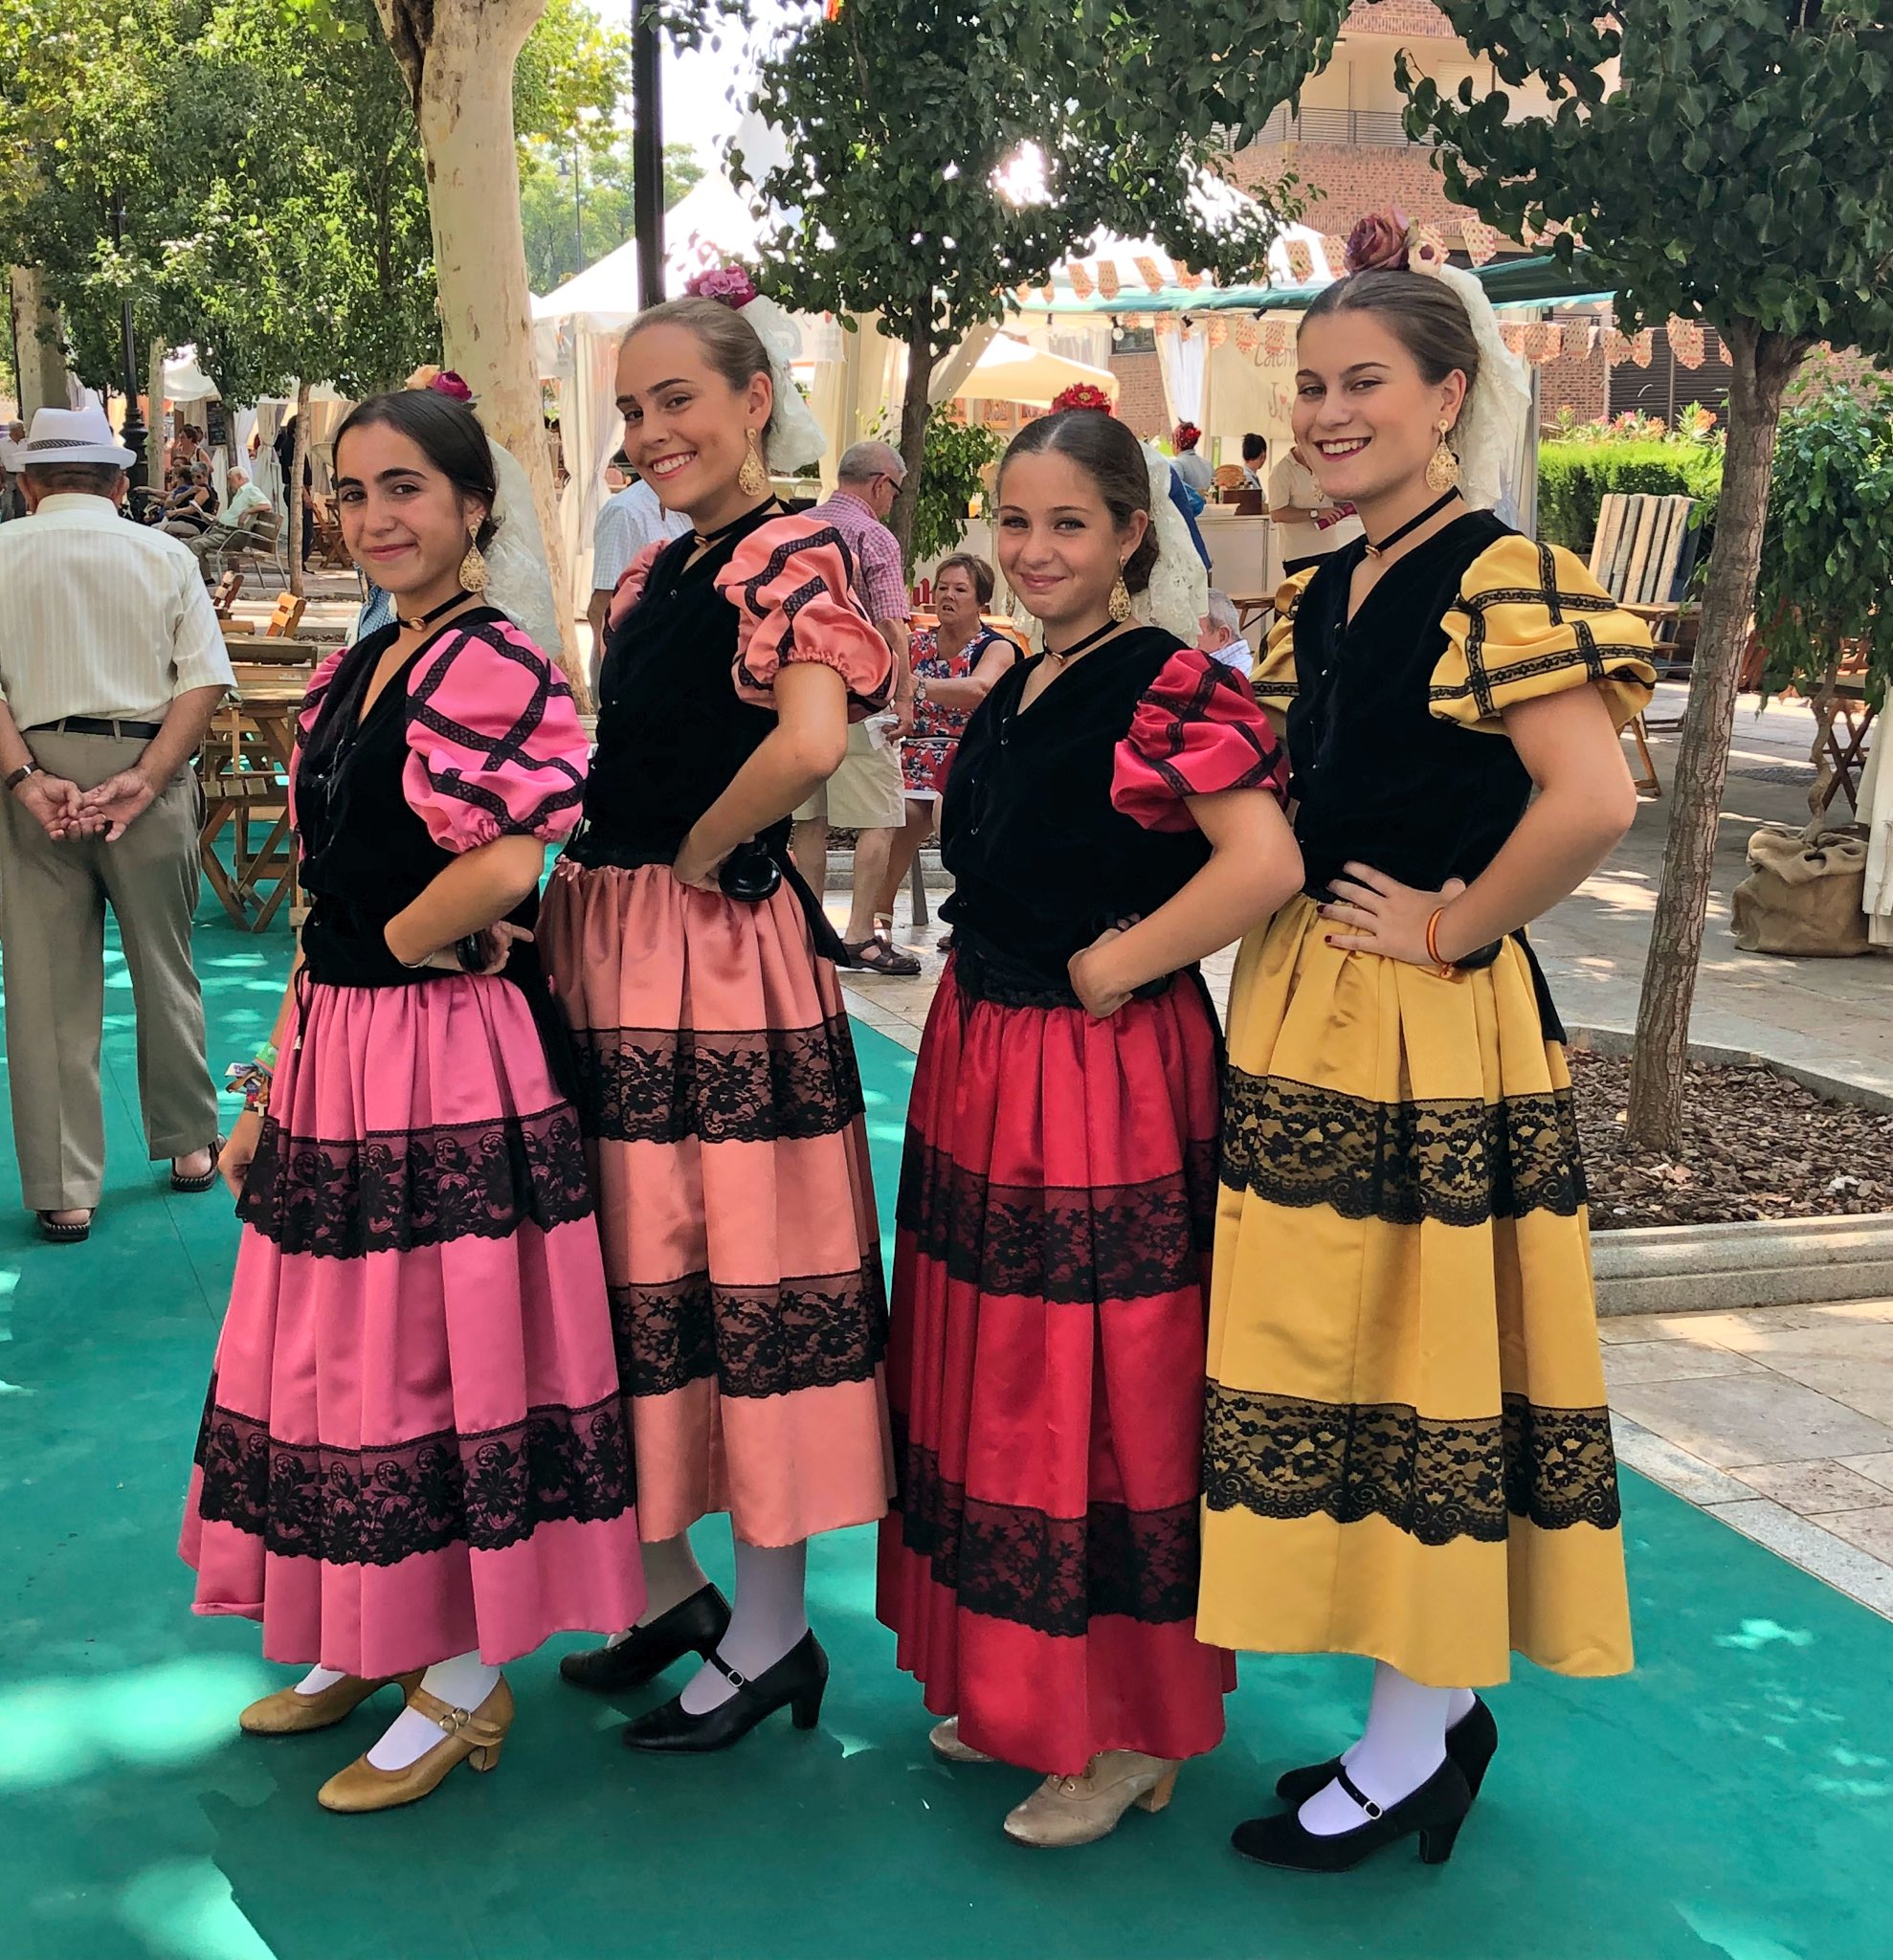 4 chicas antequeranas luciendo el traje típico de Antequera.